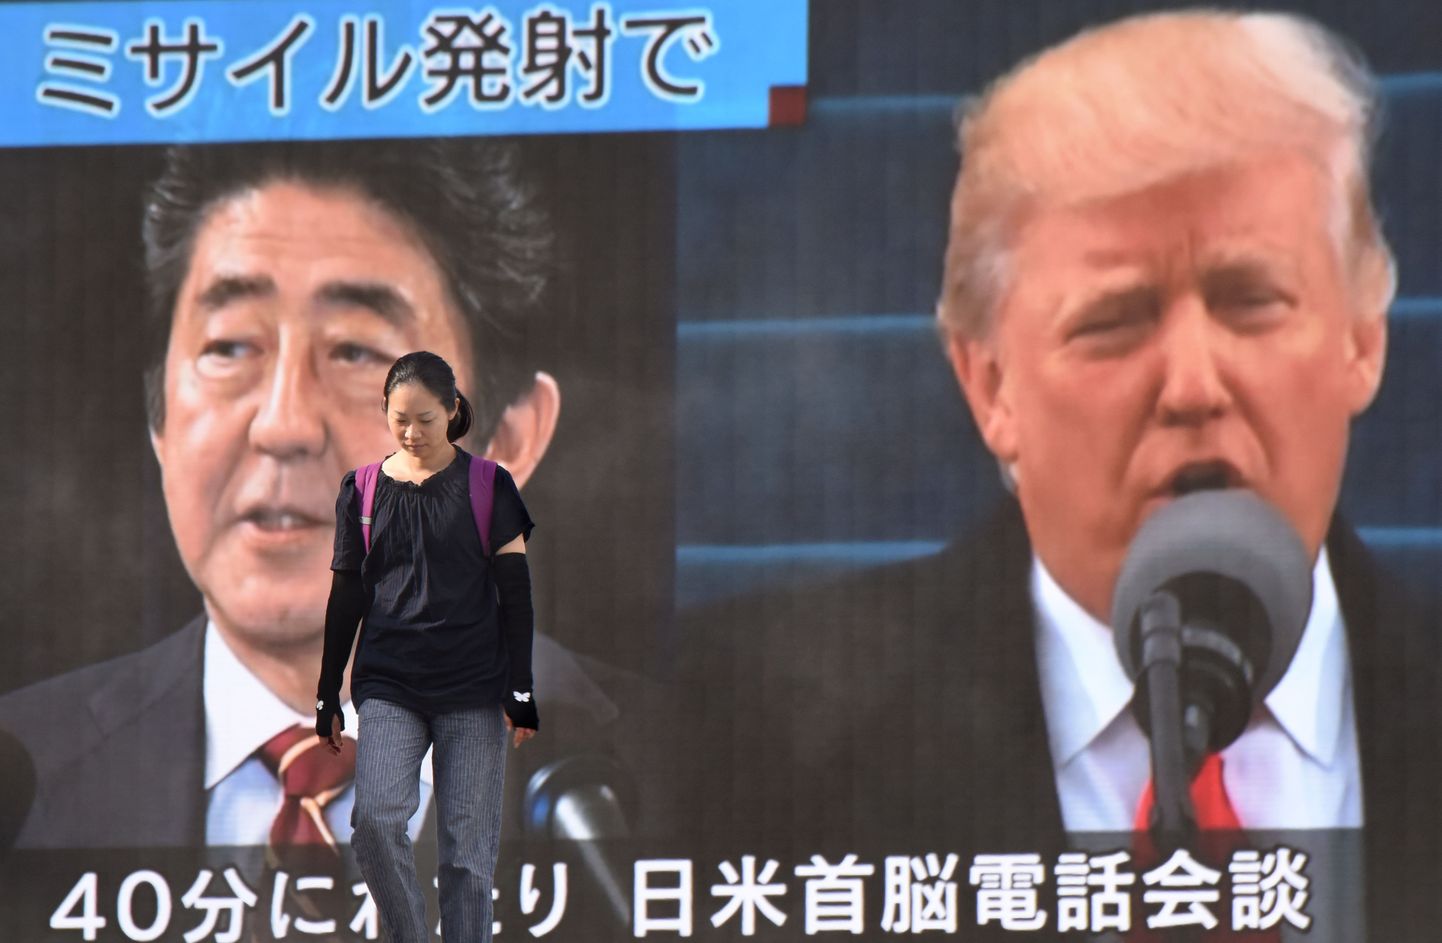 Suured ekraanid Ühendriikide presidendi Donald Trumpi ja Jaapani peaministri Shinzo Abega